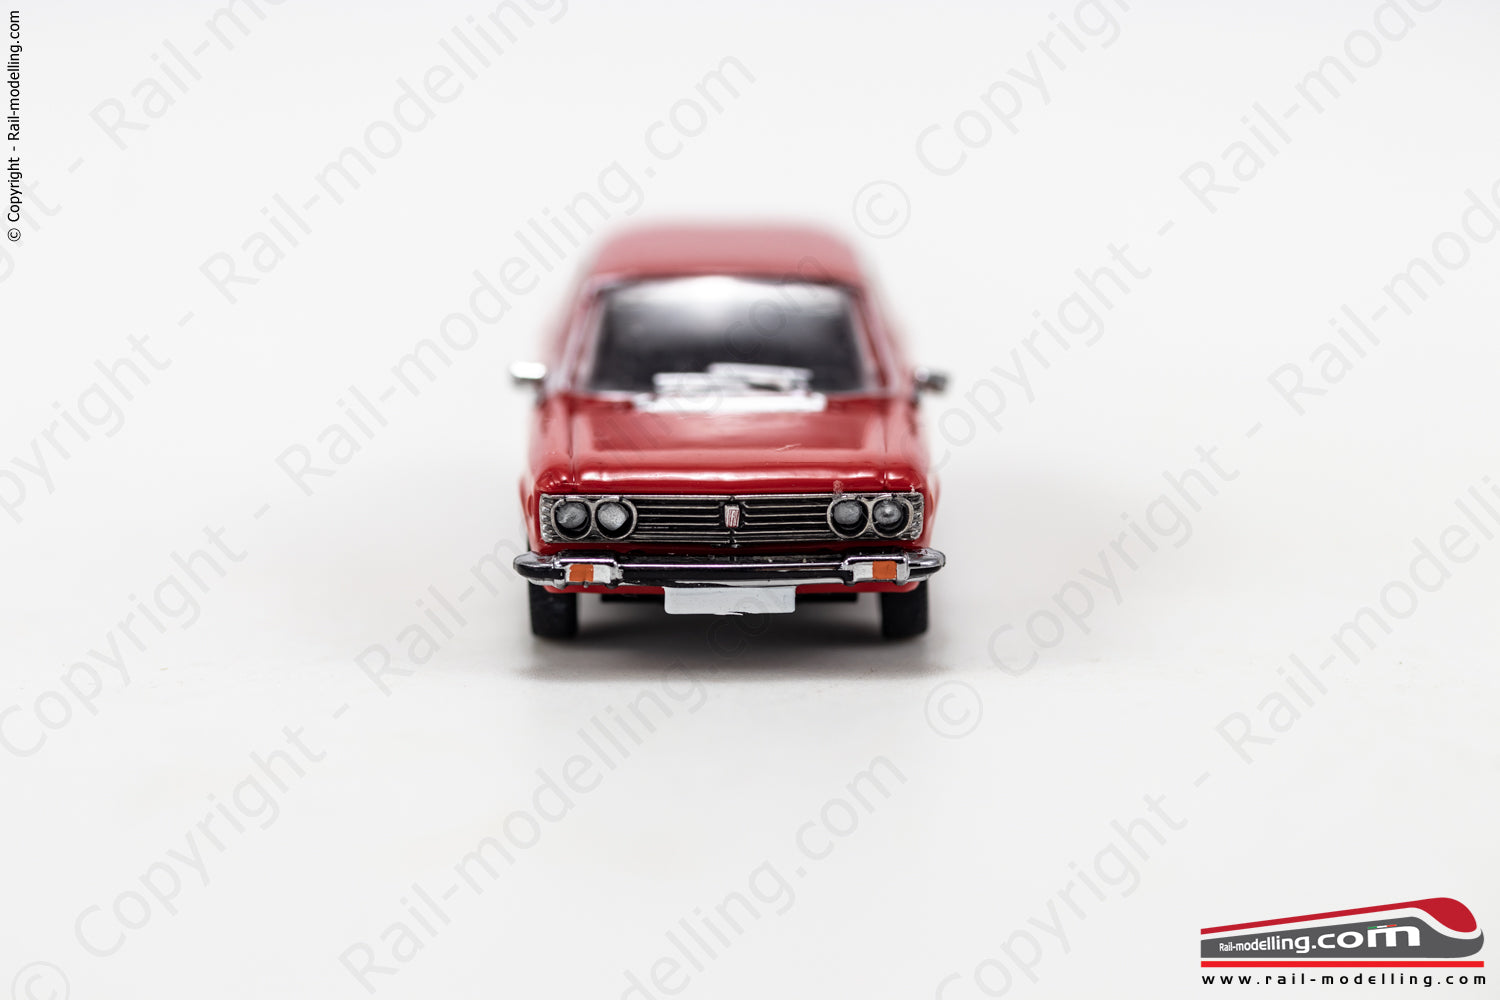 PCX 870636 - H0 1:87 - Automodello Fiat 130 rossa